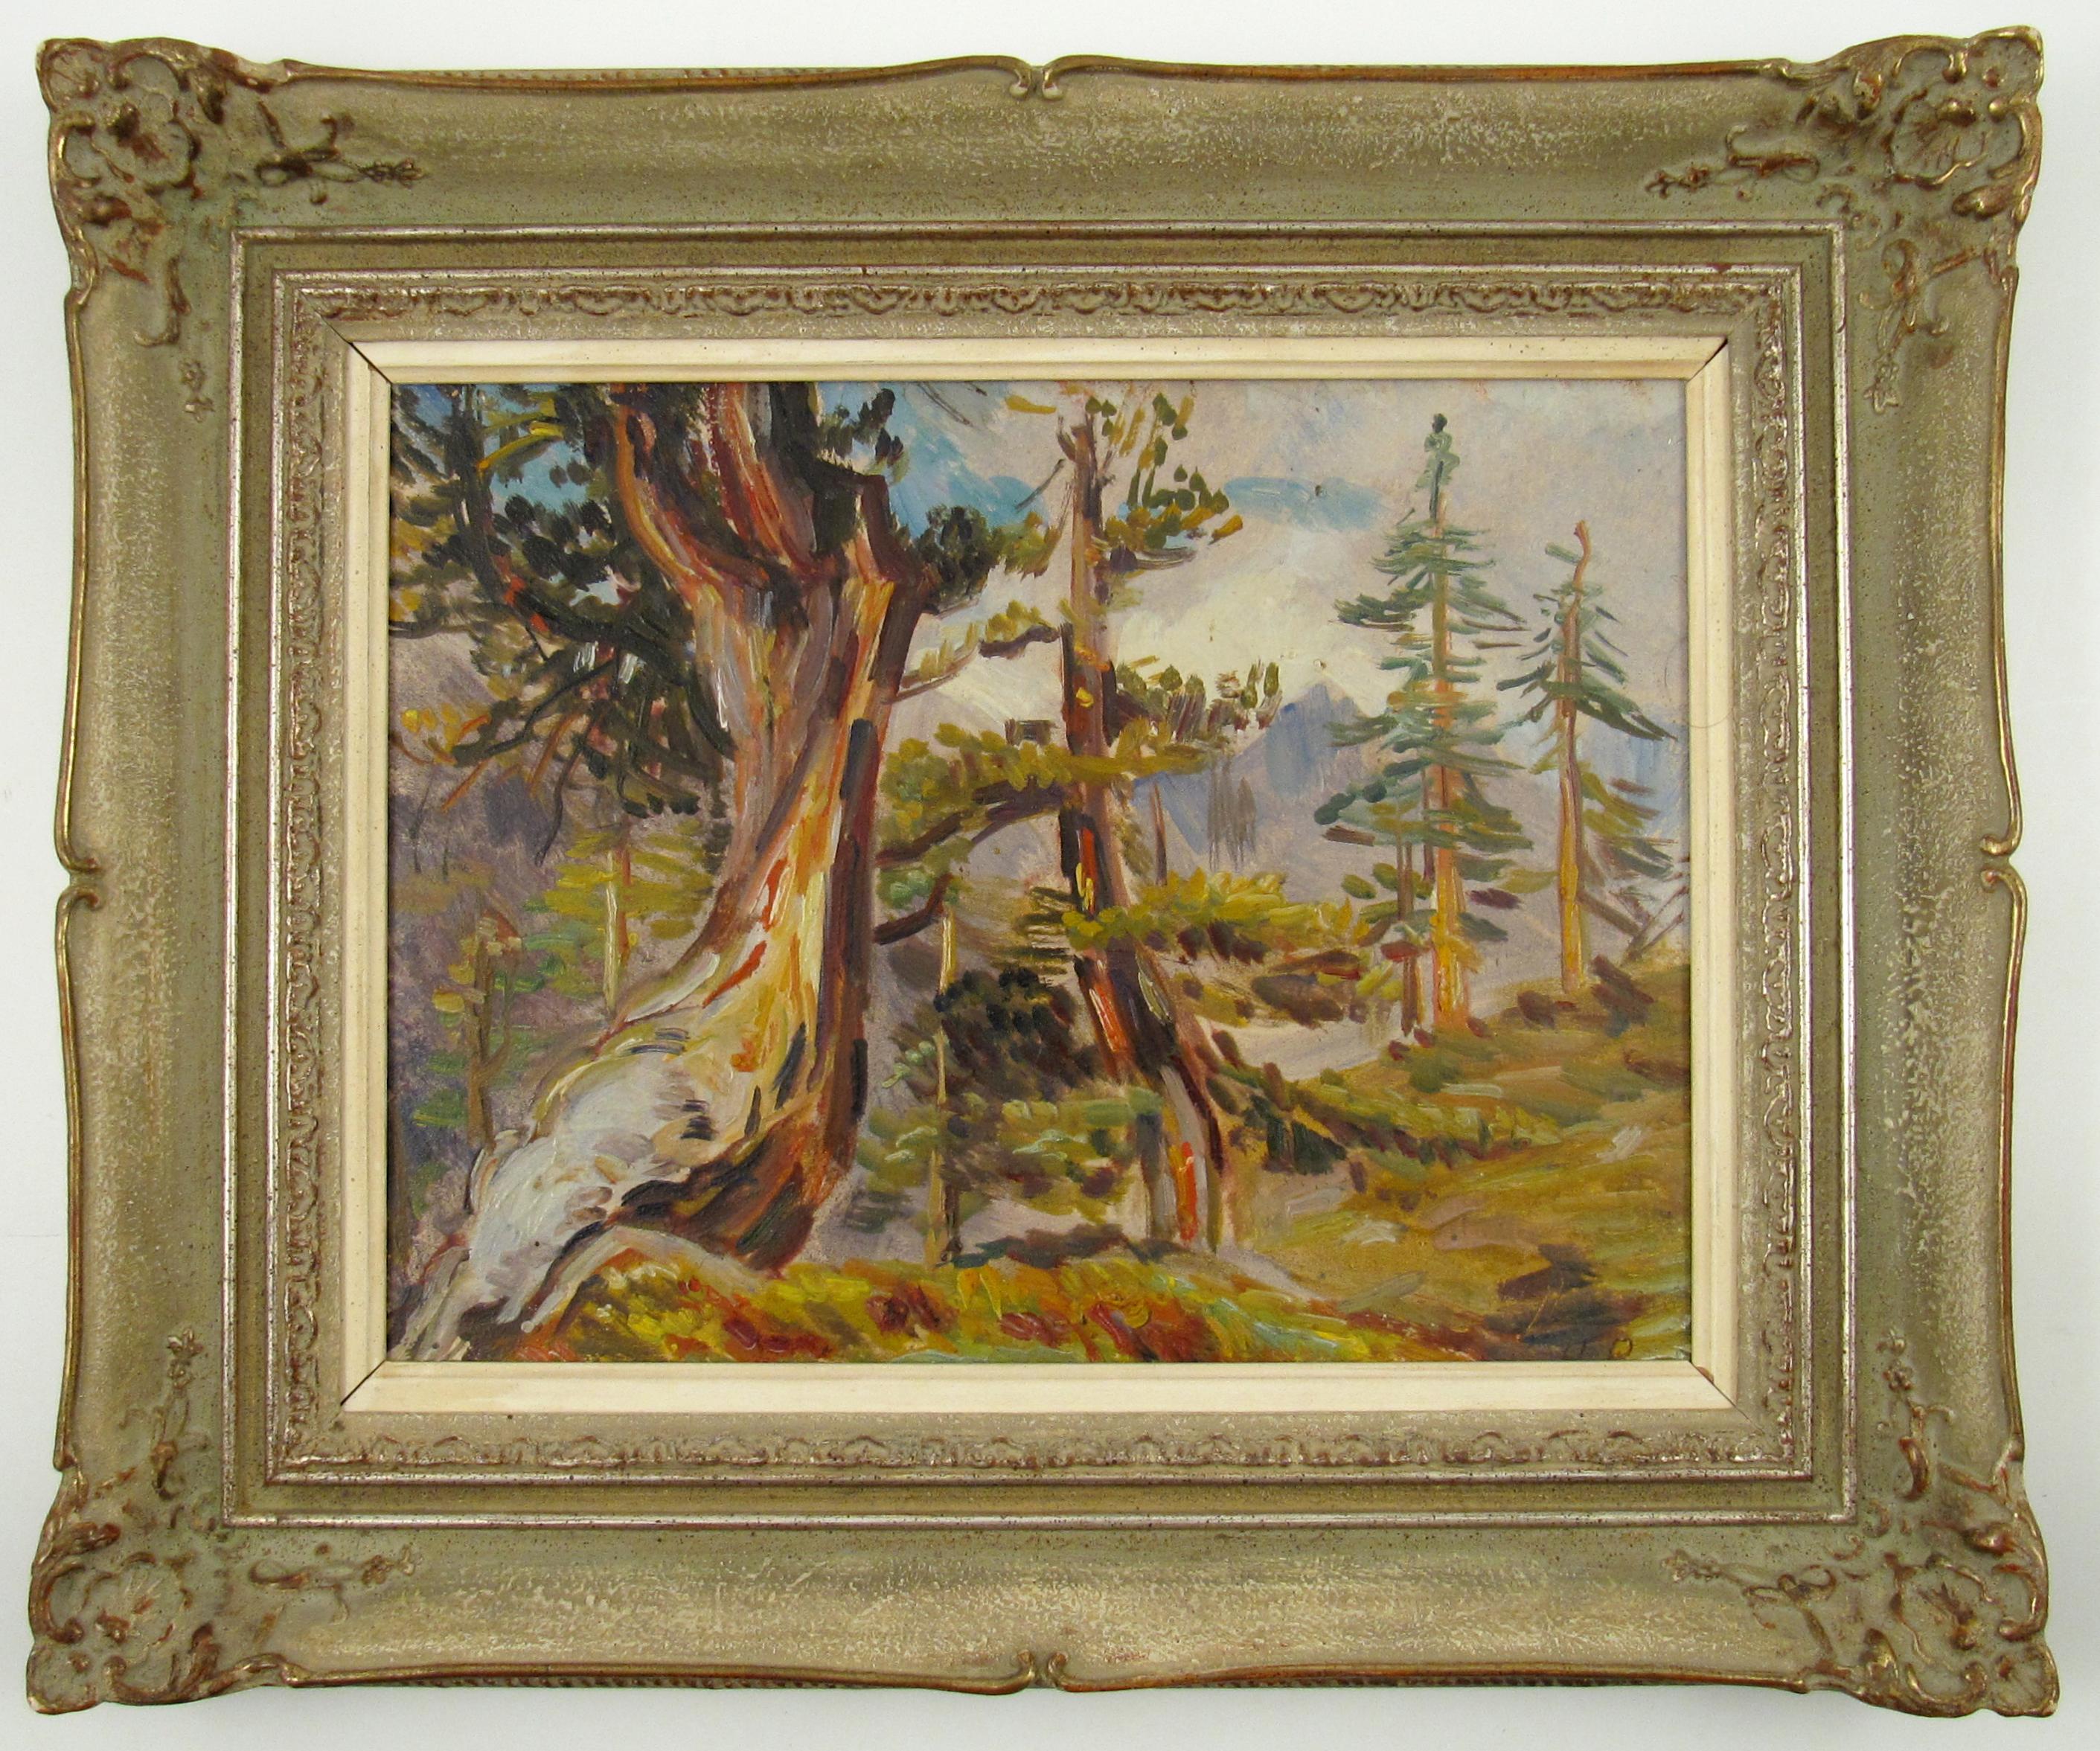 Landscape Painting Hanny Bay - Hanni Bay ( Suisse, 1885 - 1978), Forêt alpine, peinture à l'huile sur carton